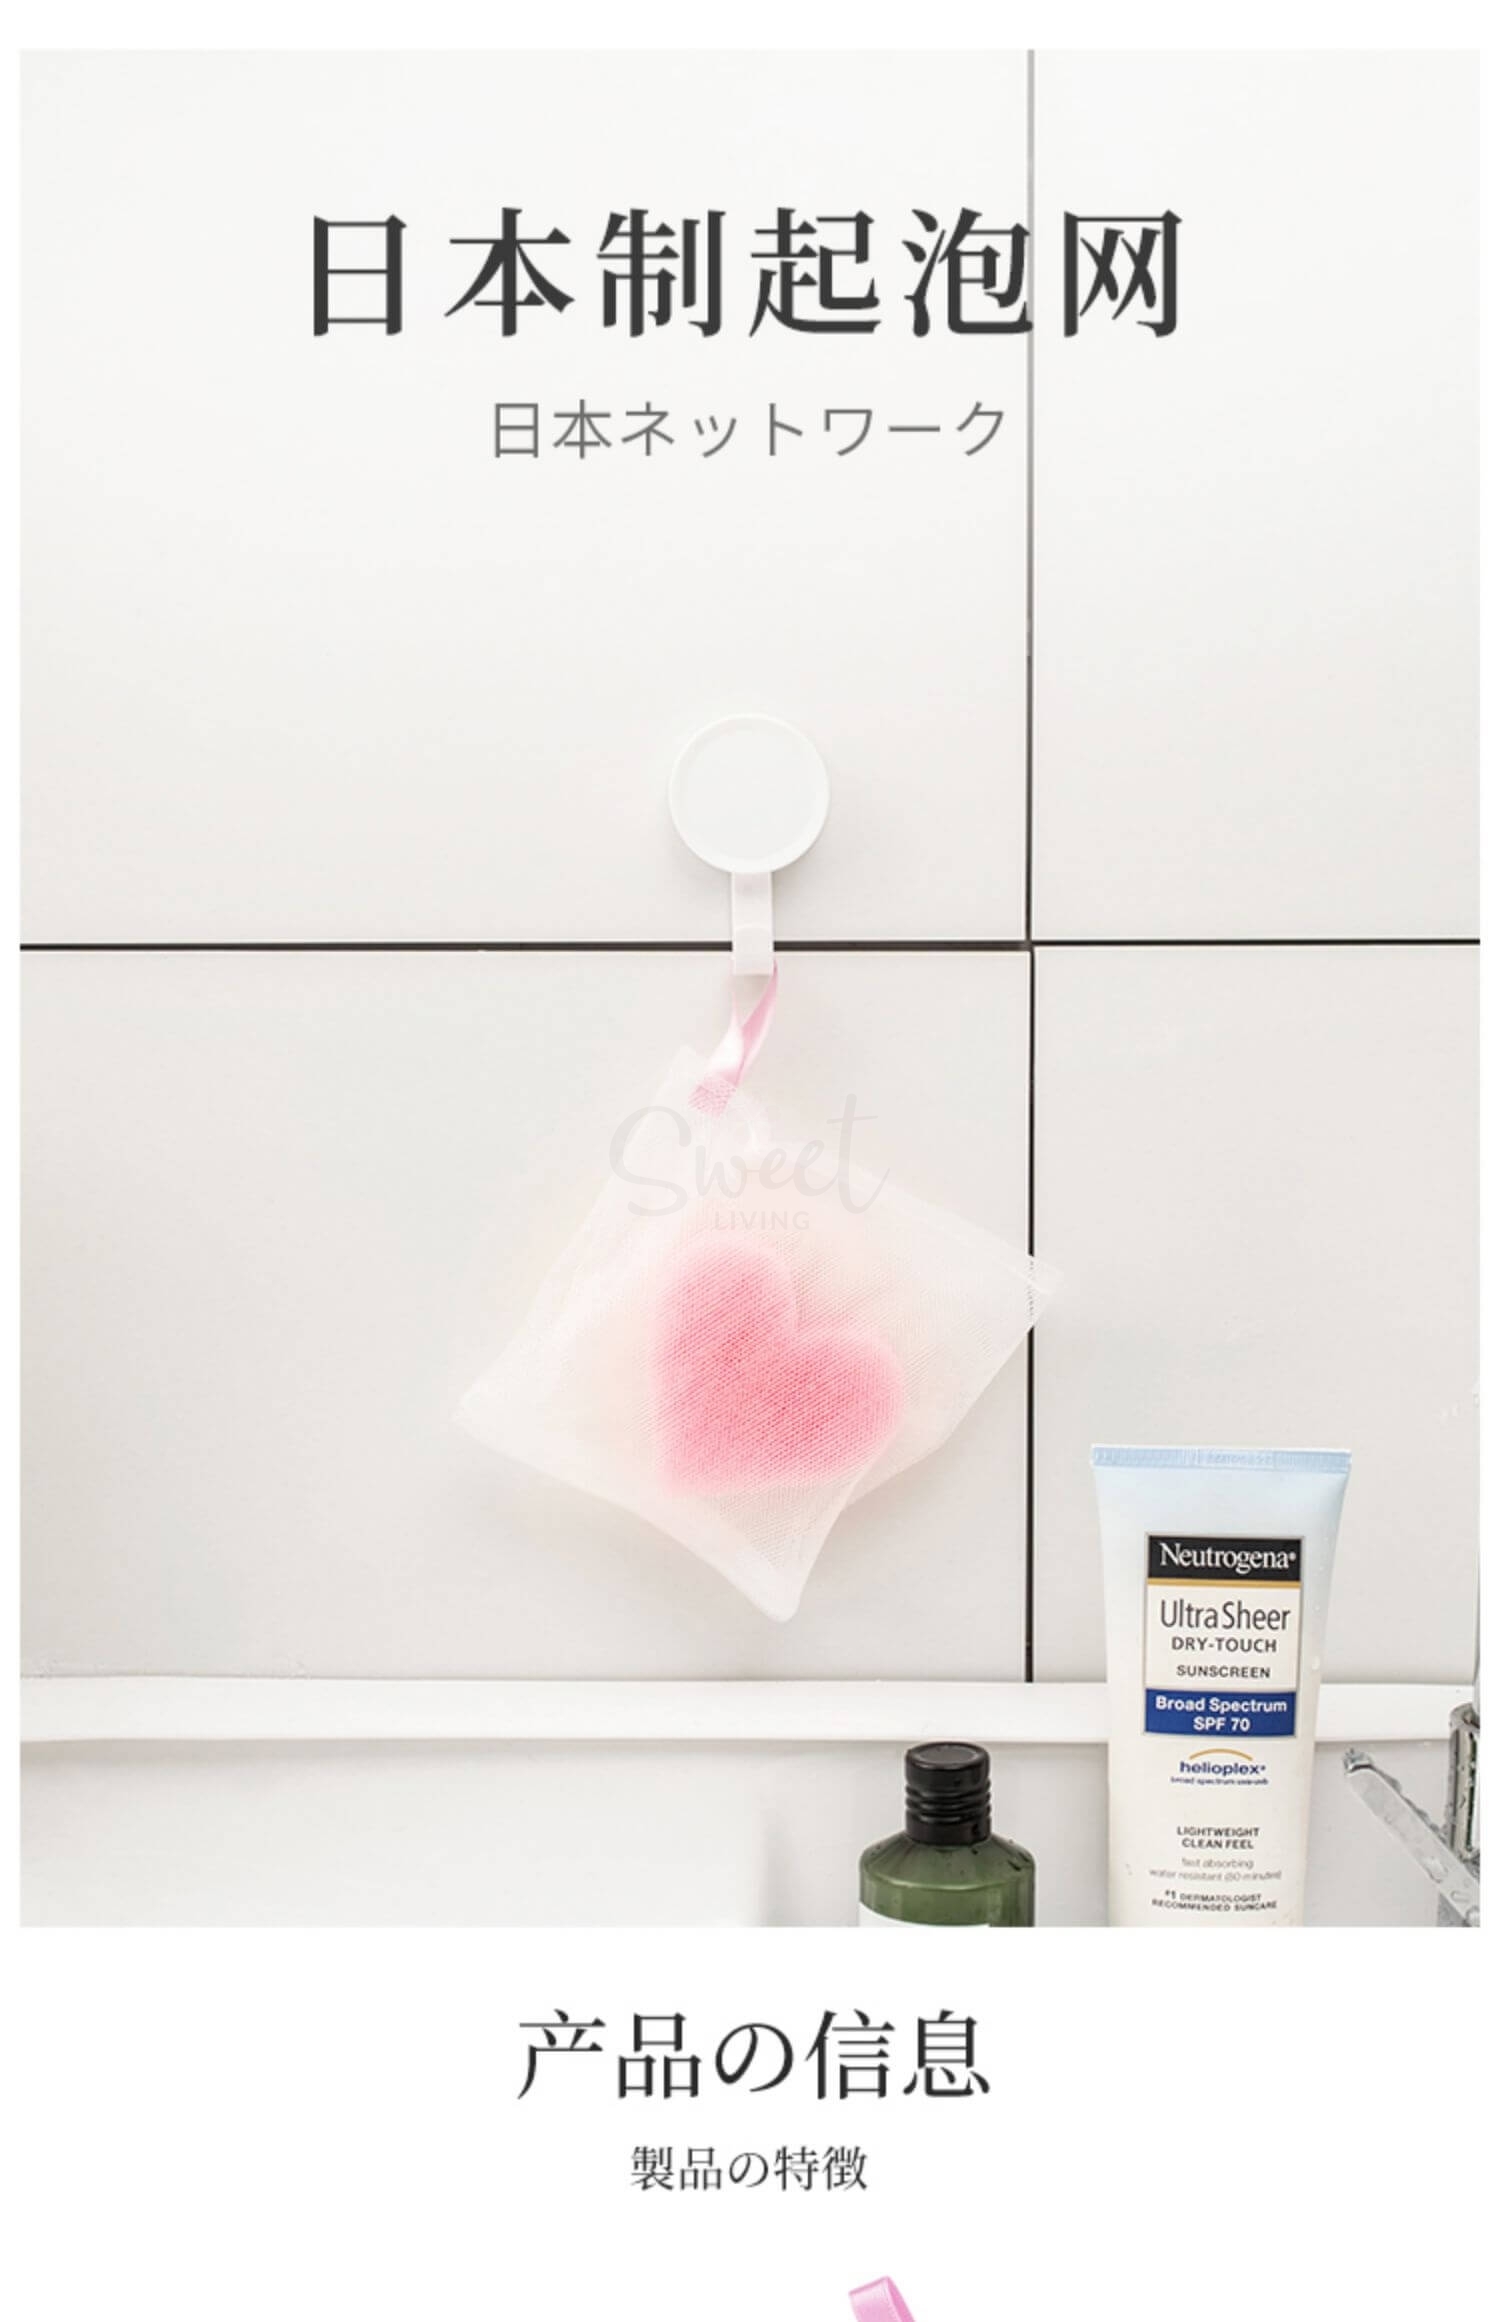 【日本 KOKUBO】小久保 心形海绵起泡网/肥皂起泡网 可悬挂 -  - 16@ - Sweet Living